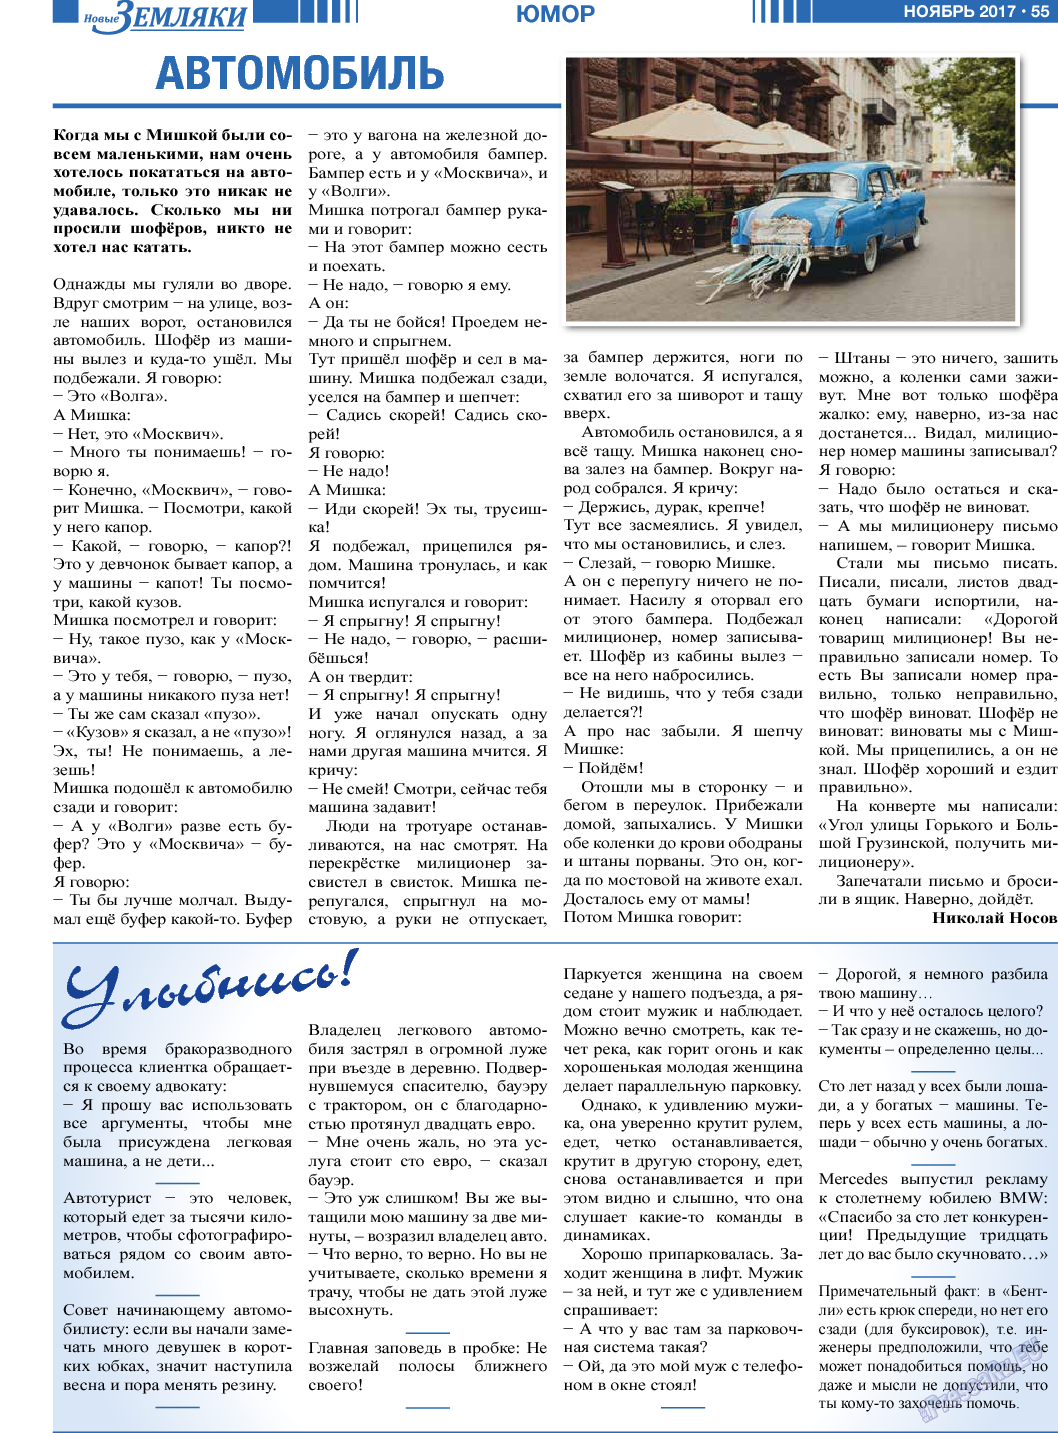 Новые Земляки, газета. 2017 №11 стр.55